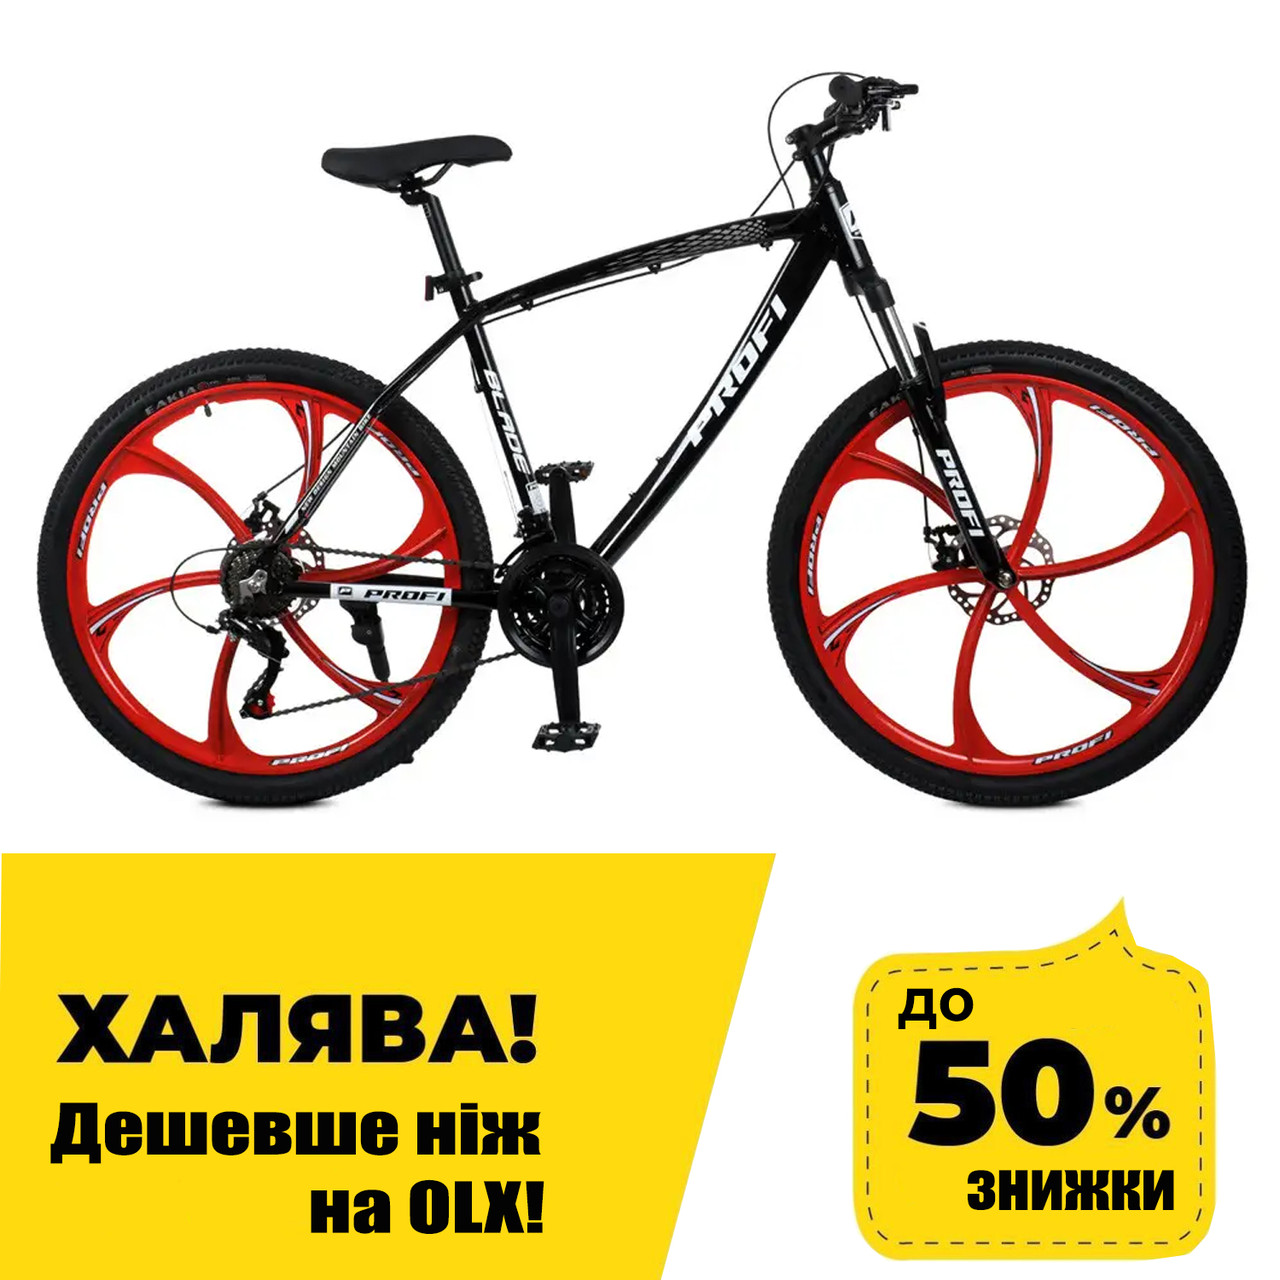 Спортивний велосипед 26 дюймів (алюмінева рама 17", SHIMANO 21SP) Profi BLADE T26BLADE 26.2B Чорно-червоний